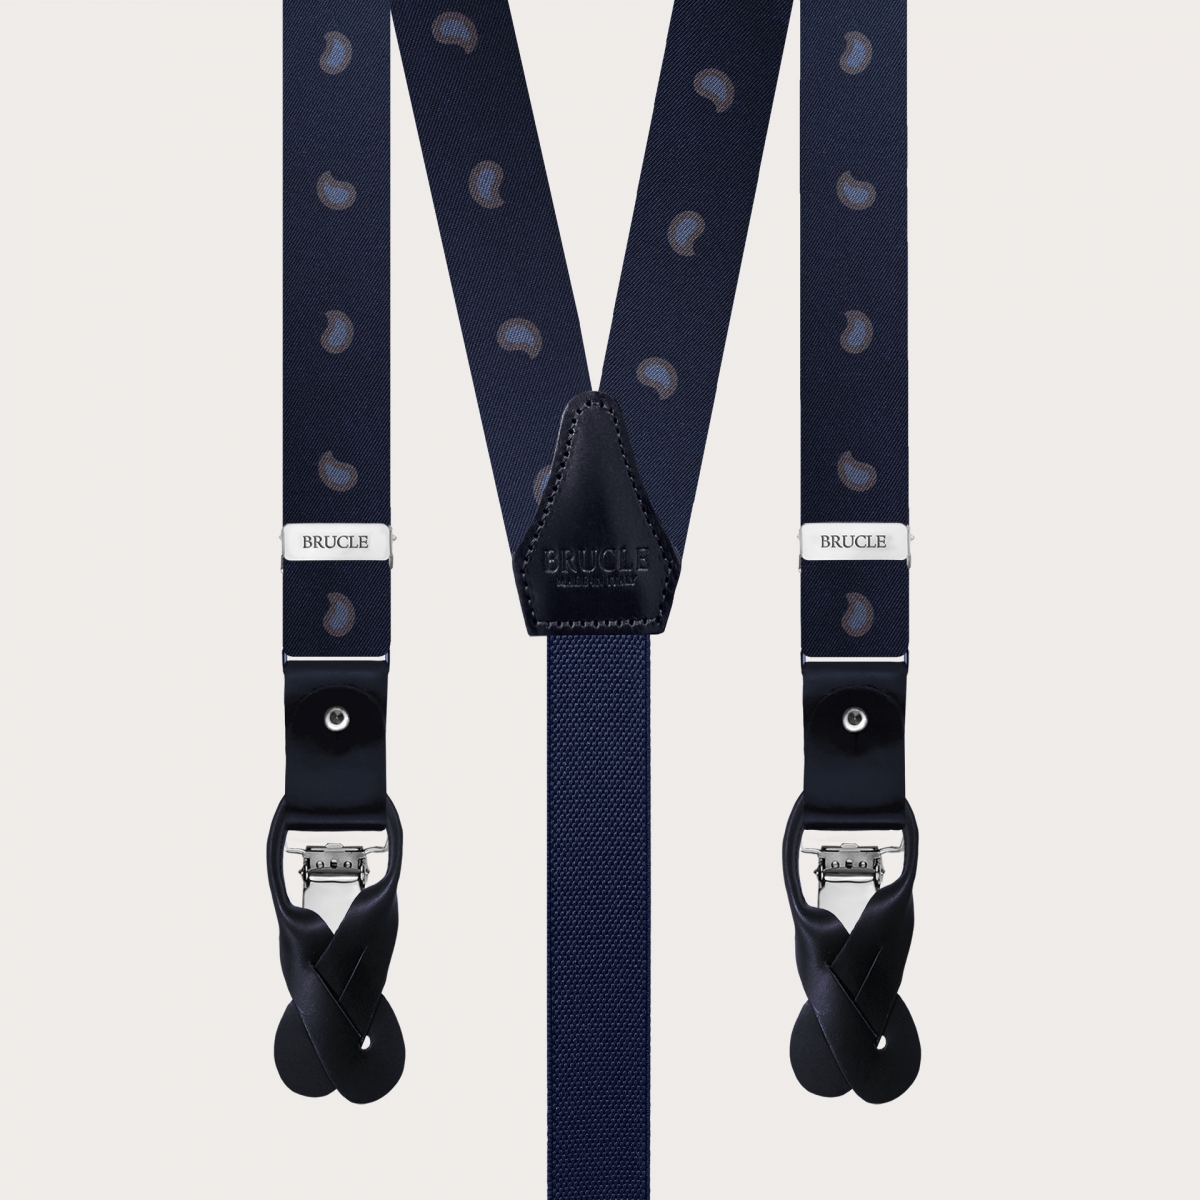 Slim Y-shape fabric suspenders in printed silk, blue paisley pattern